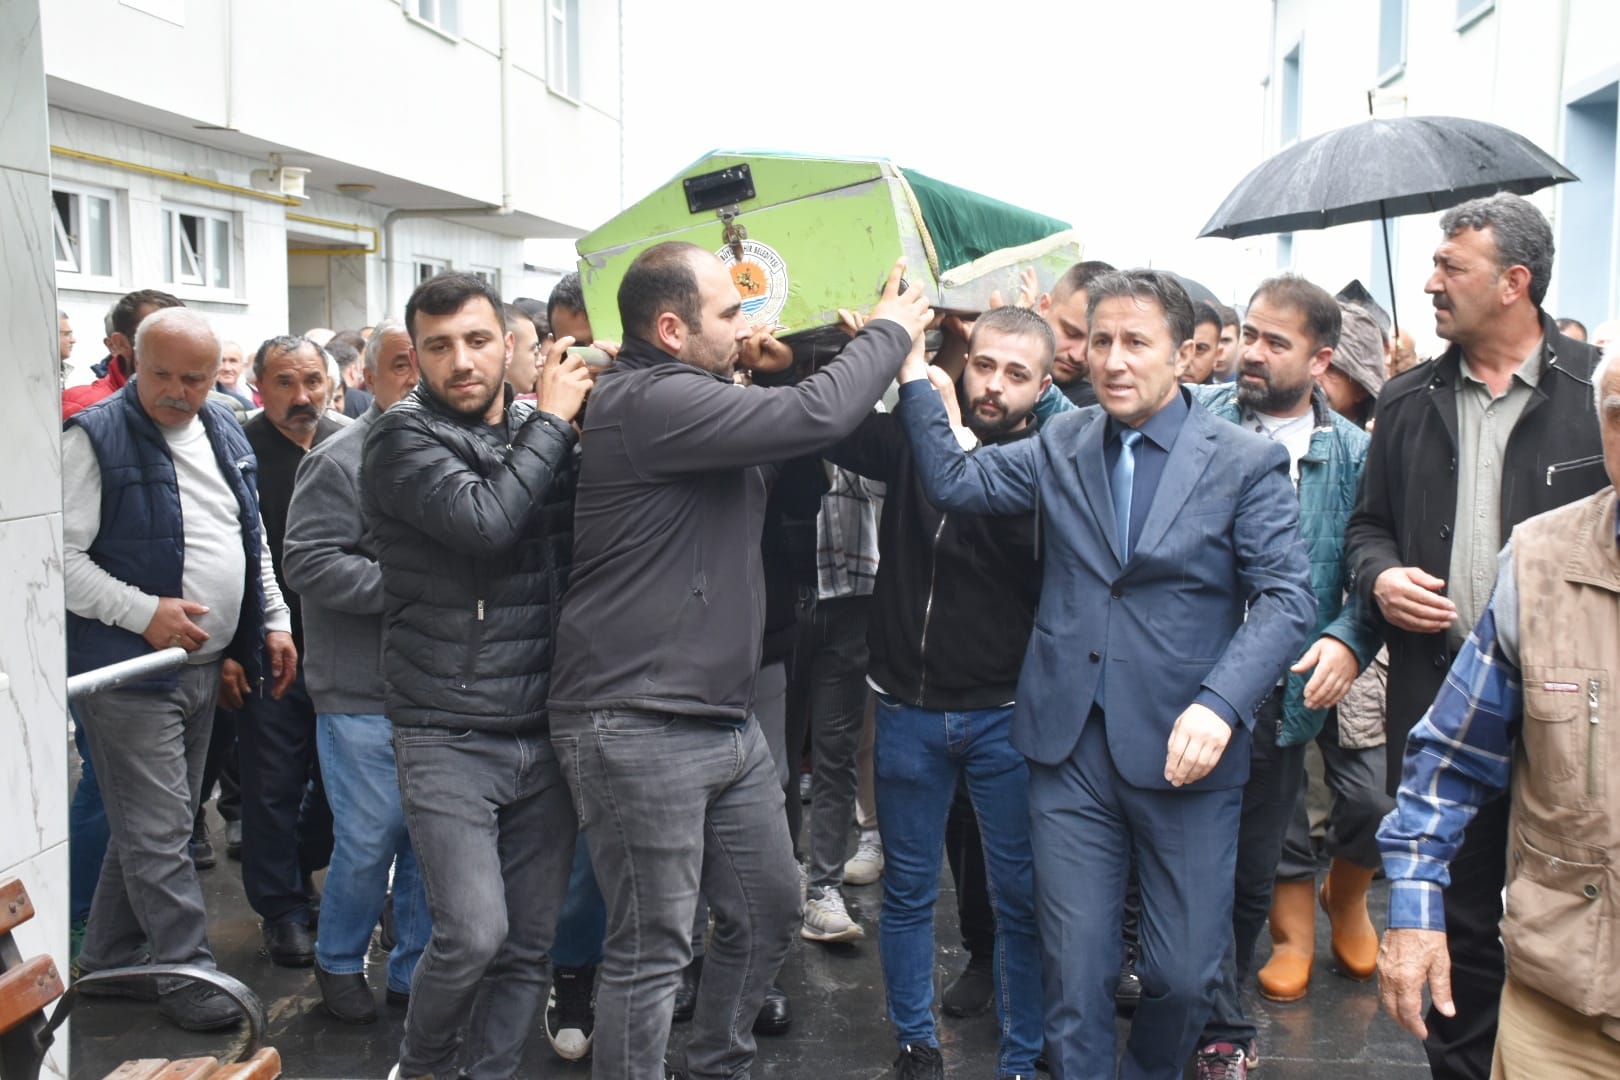 Belediye Başkanımız Hüseyin Kıyma ilçemiz halkından vefat eden Semra Baş’ın cenaze namazına katıldı, ailesine başsağlığında bulundu.